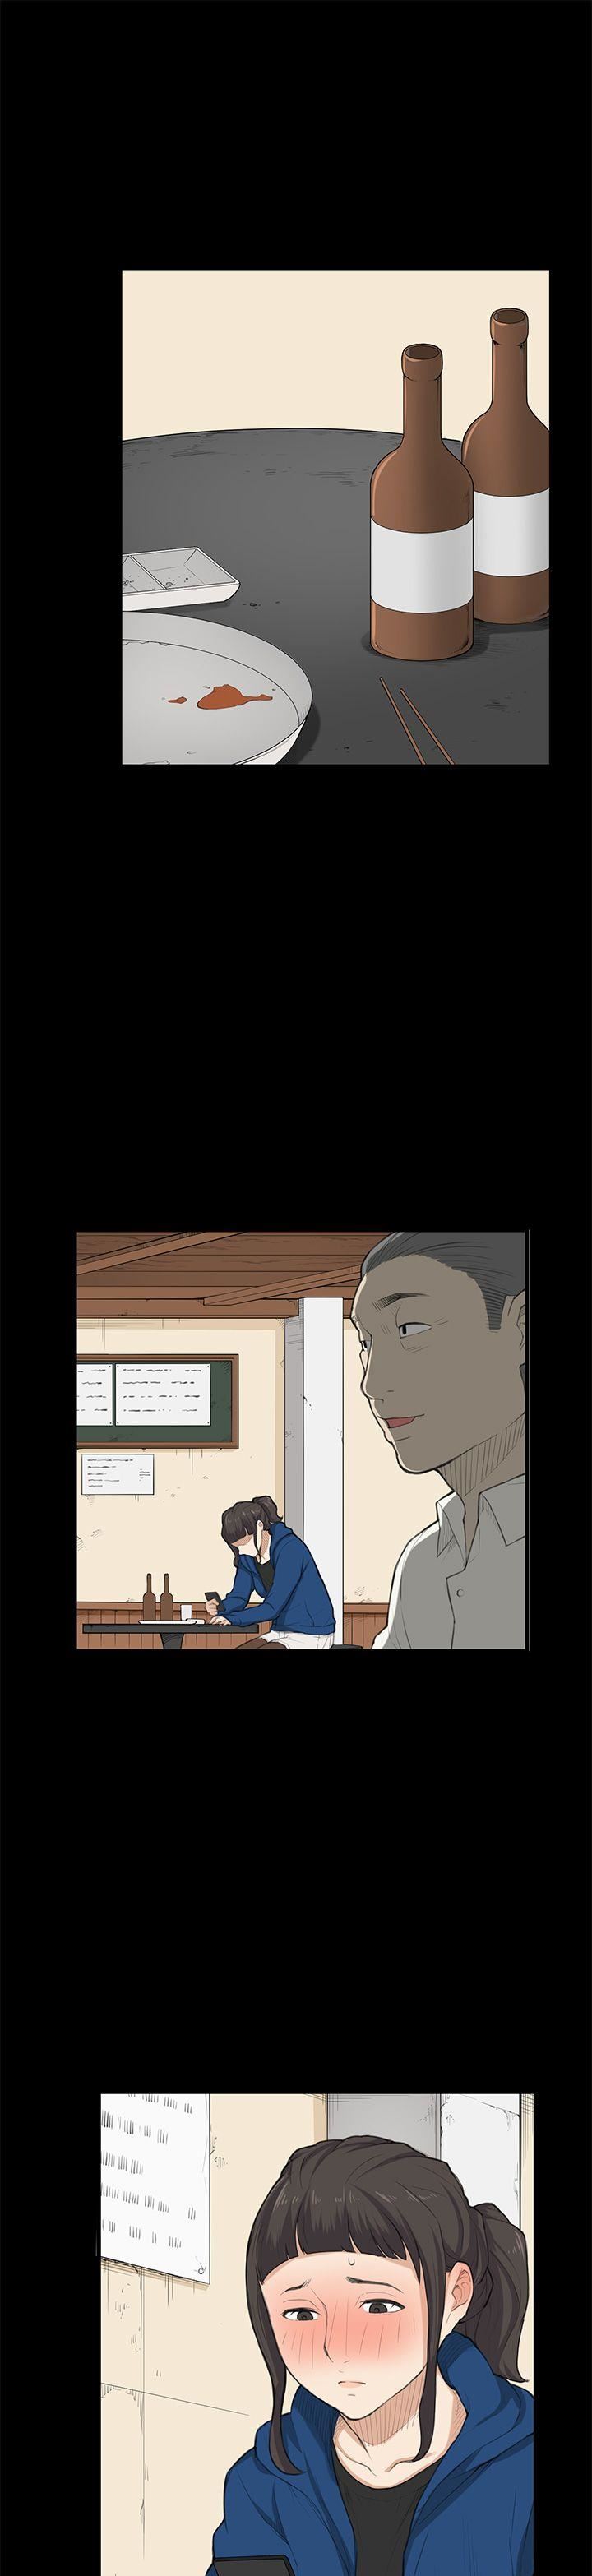 韩国污漫画 斯德哥爾摩癥候群 第25话 16